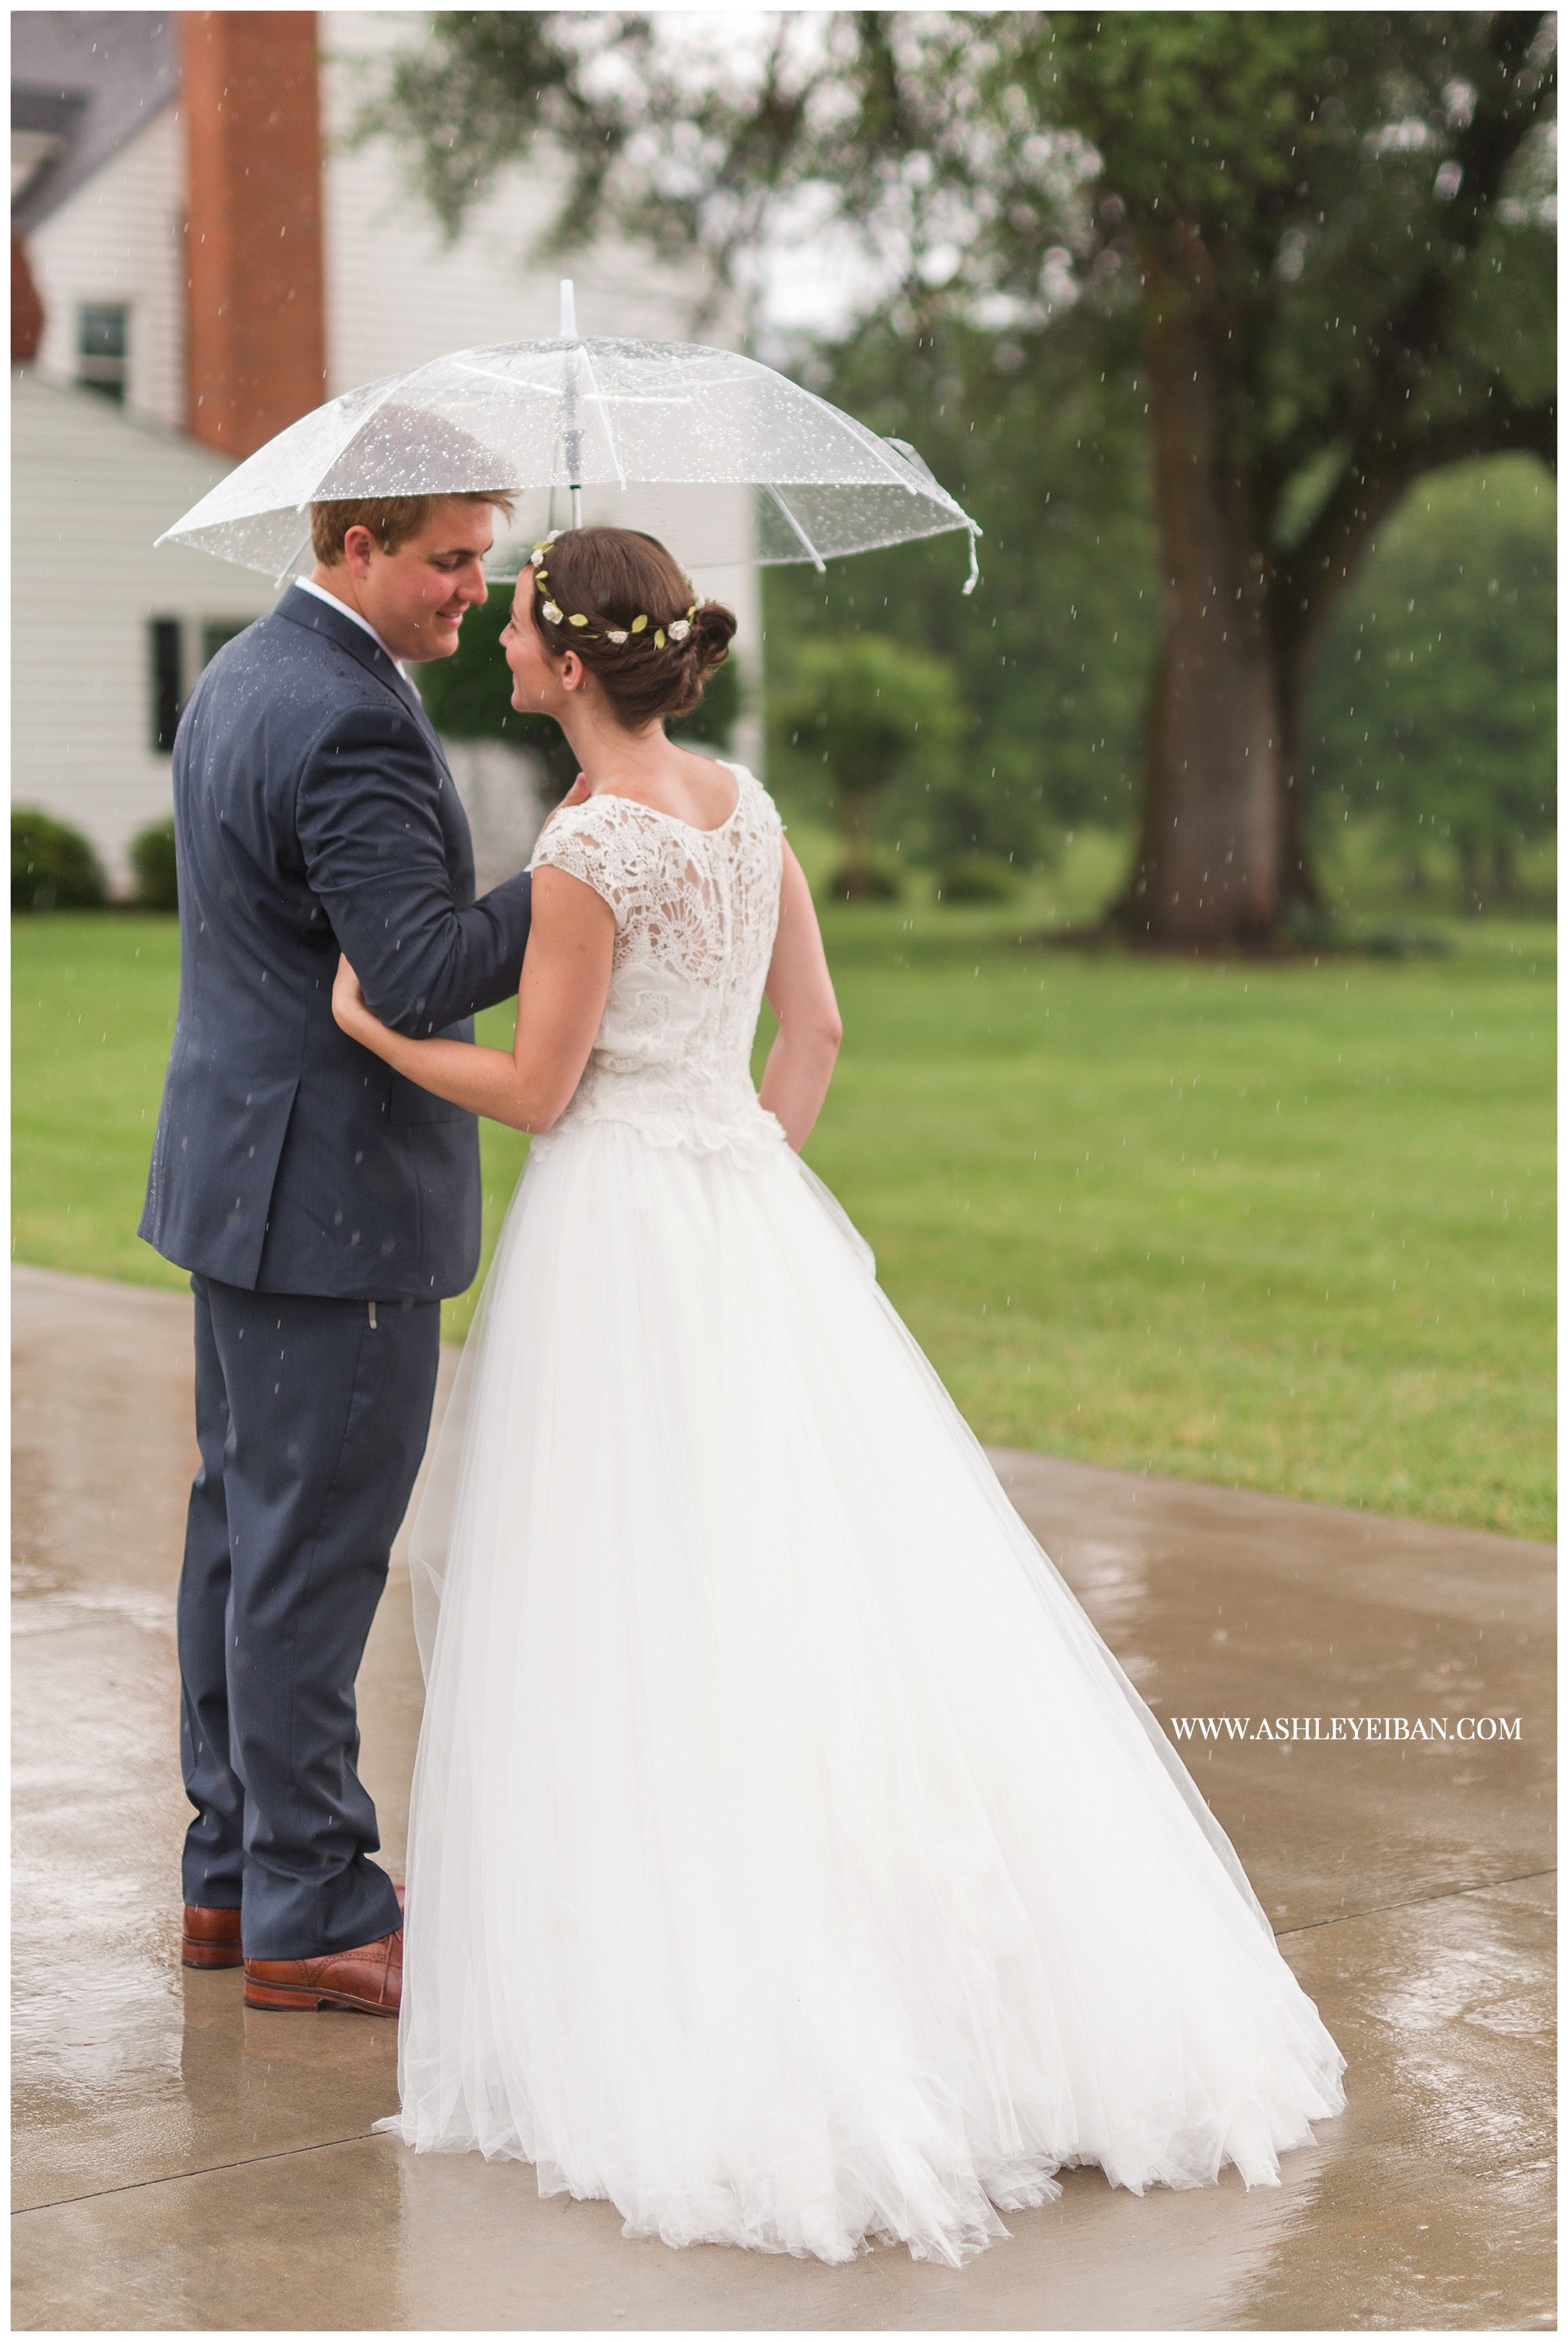 Lynchburg Wedding Photographer || Backyard Wedding || Ashley Eiban Photography || www.ashleyeiban.com